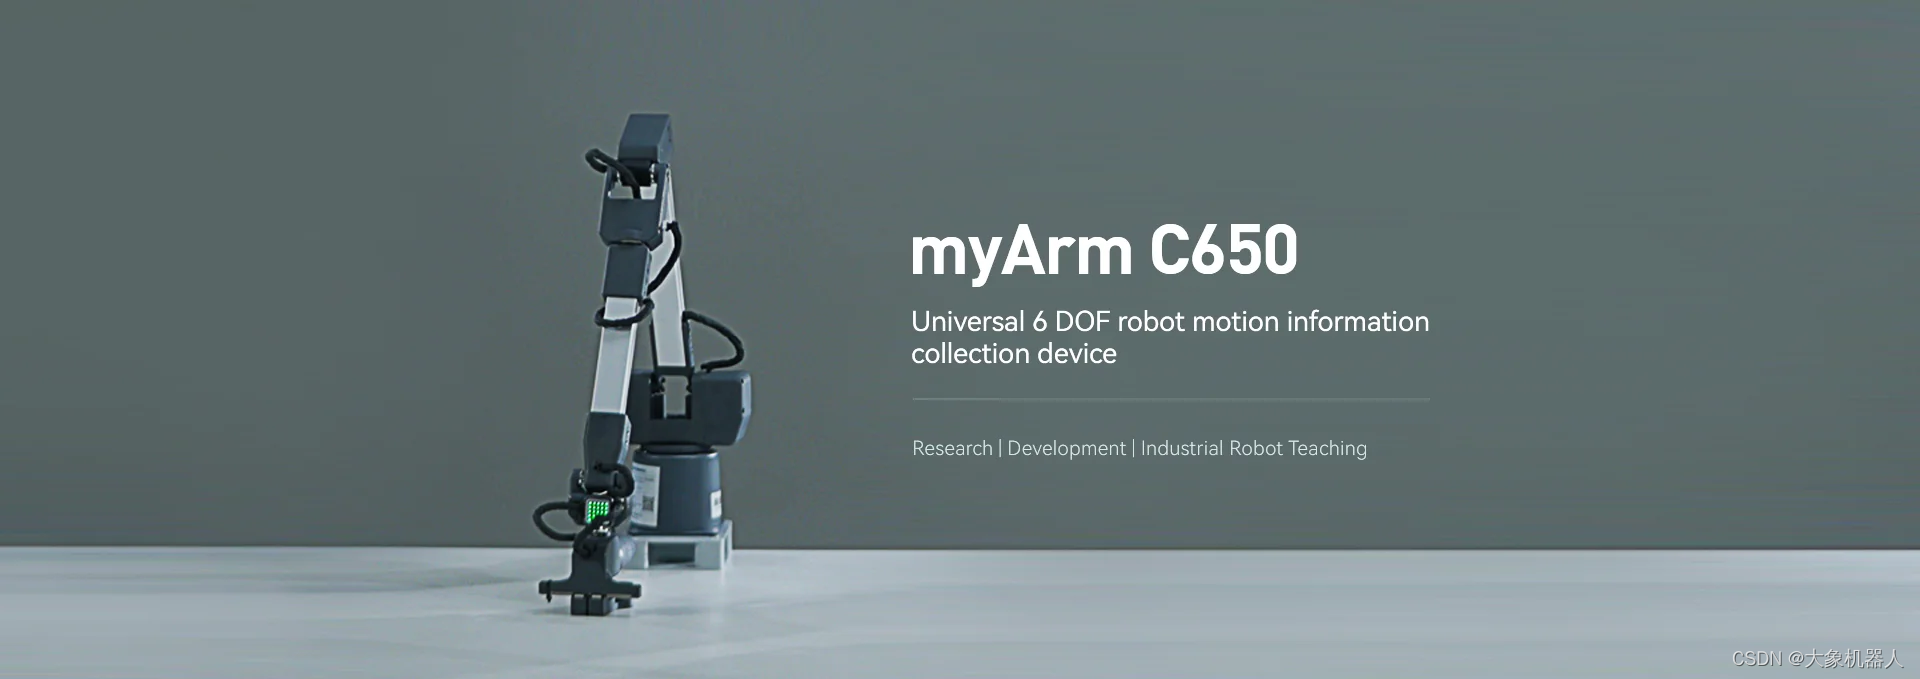 大象机器人智能遥操作机械臂组合myArm M&amp;C，加速具身智能研究与发展！